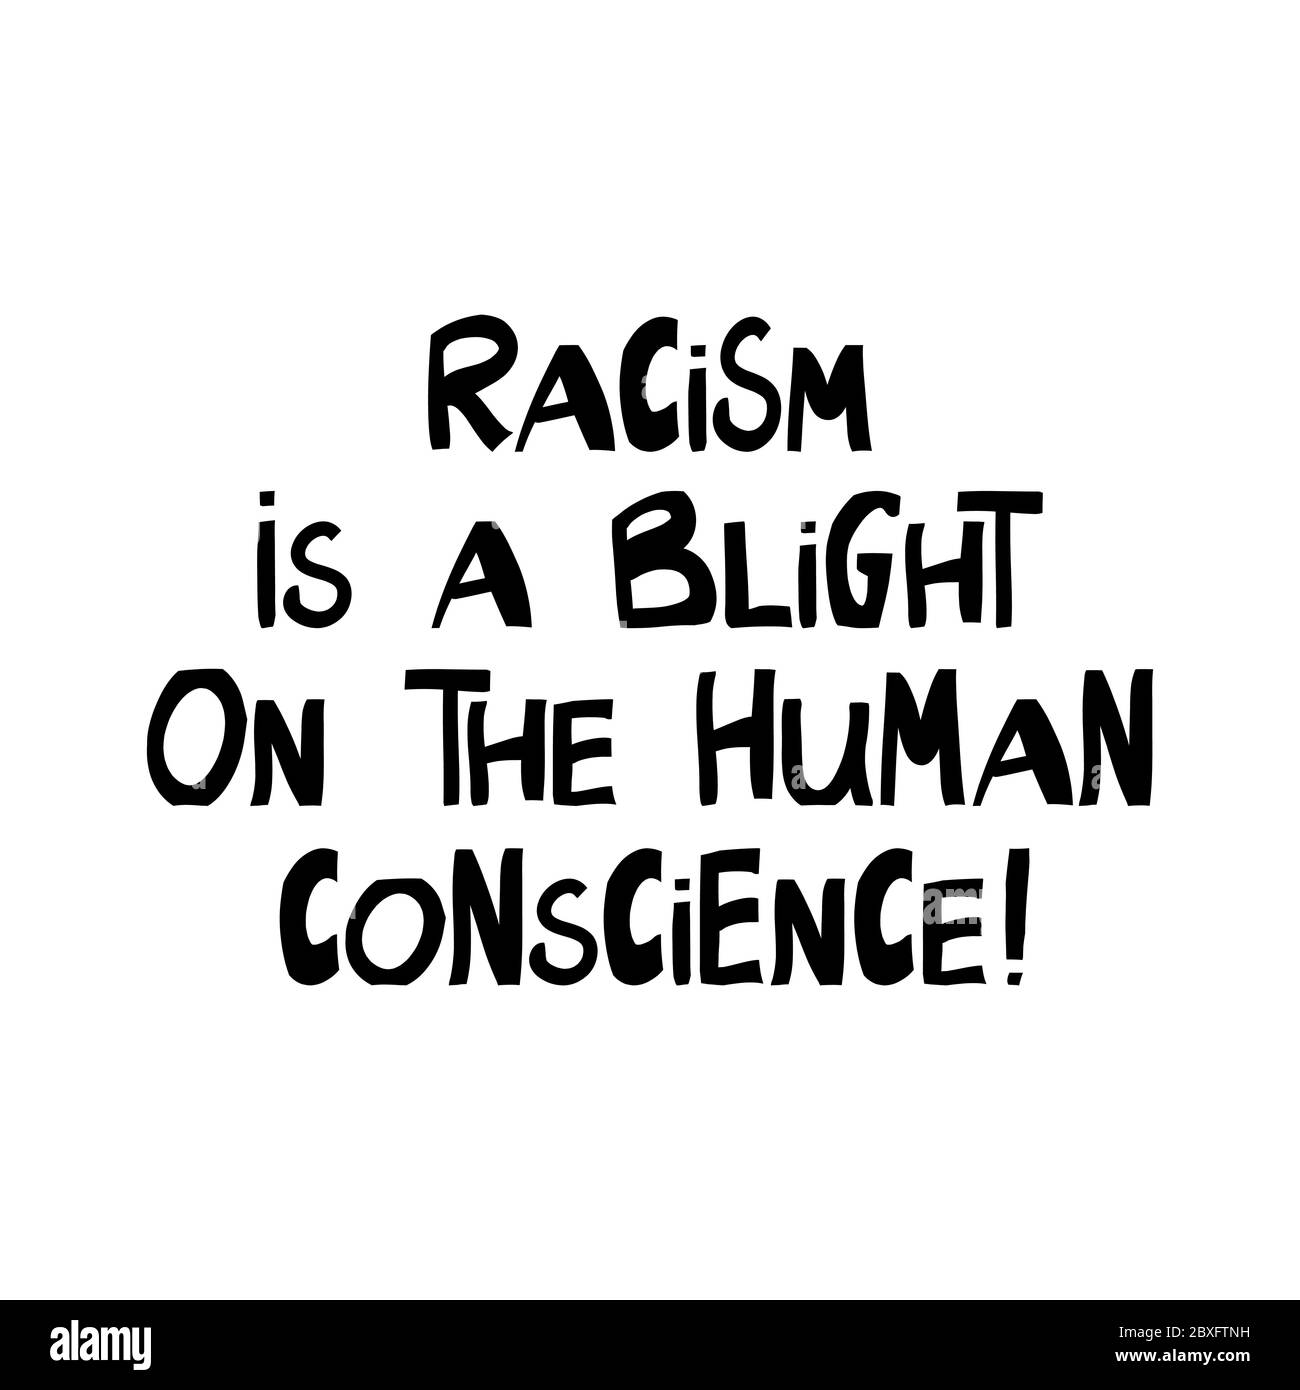 Il razzismo è un'inconscenza sulla coscienza umana. Citazione sui diritti umani. Scritte in moderno stile scandinavo. Isolato su sfondo bianco. Vettore Illustrazione Vettoriale